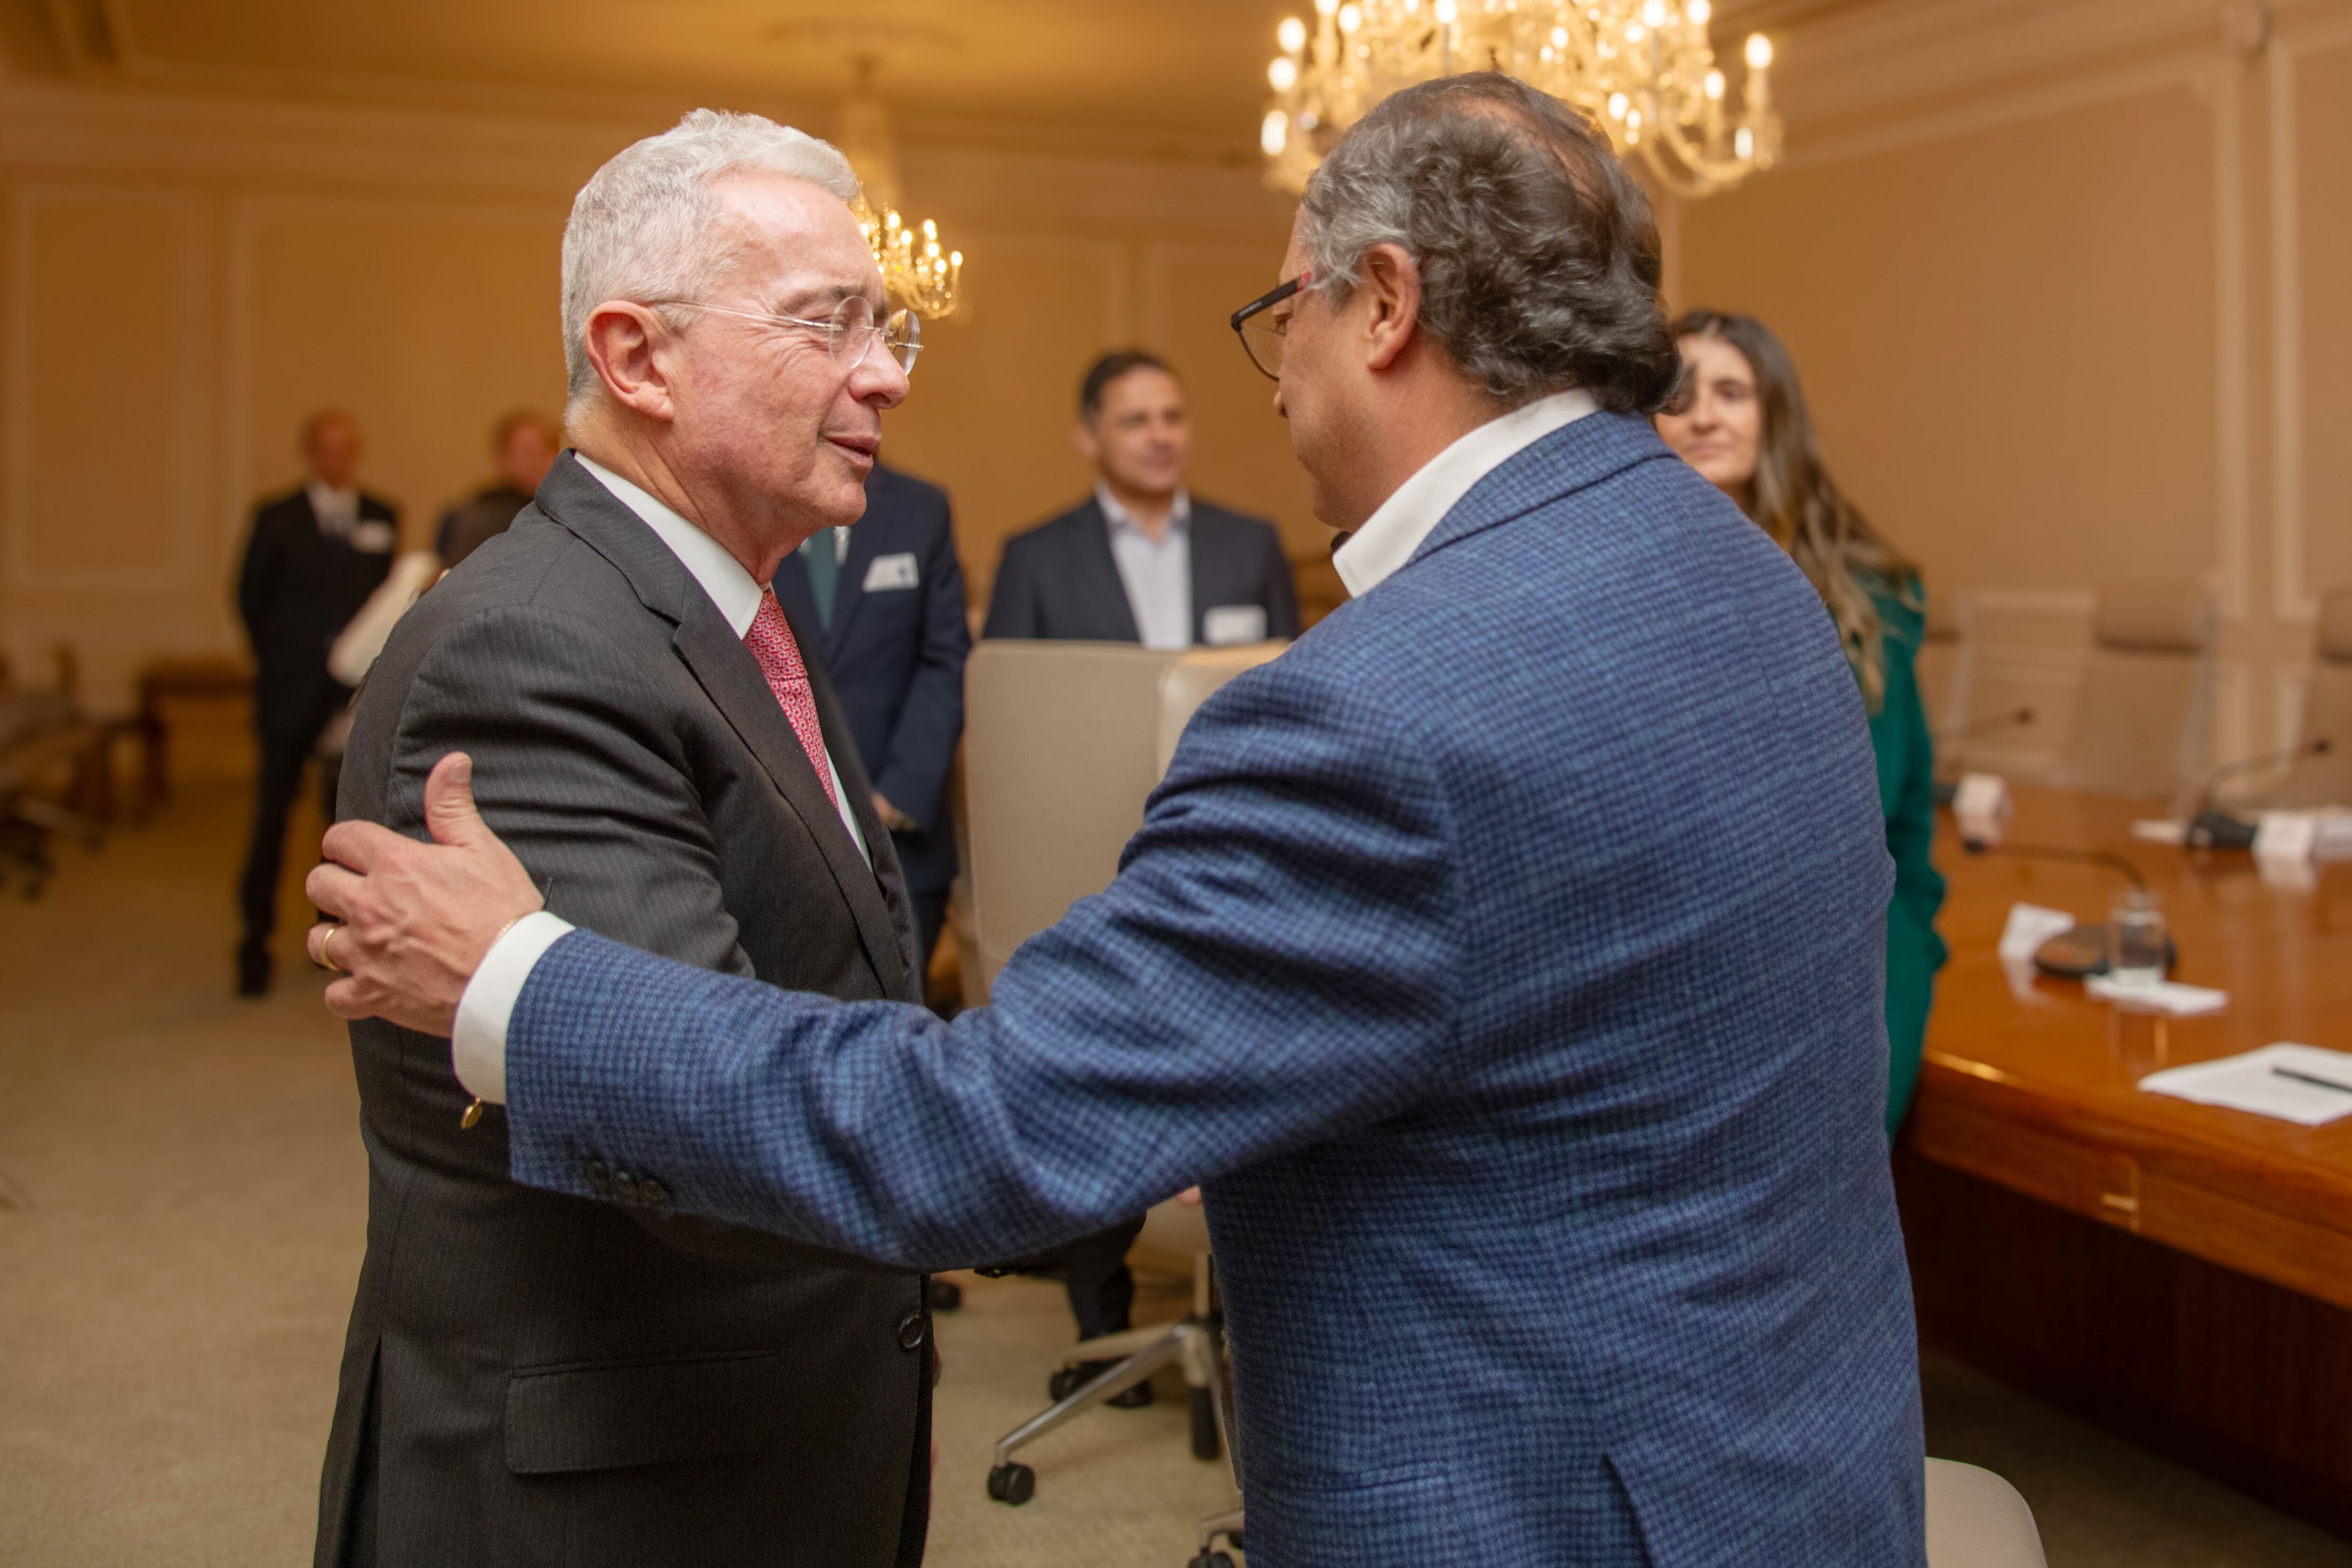 La relación entre Gustavo Petro y Álvaro Uribe atraviesa un momento crítico desde que el primero es mandatario - crédito @infopresidencia/X